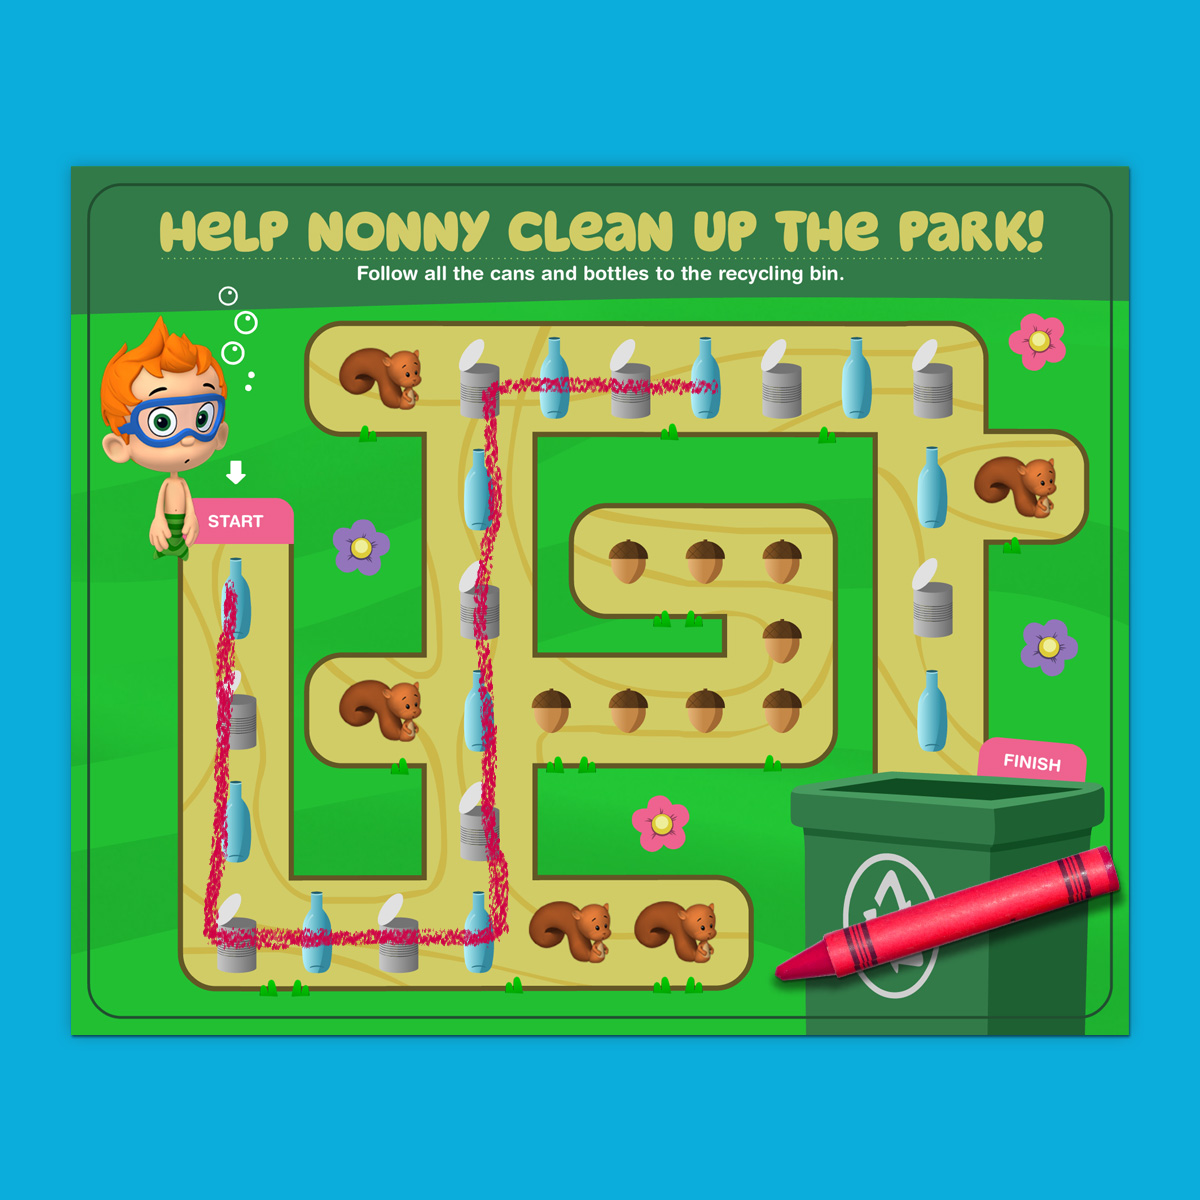 Nonny's Park Clean-up Maze